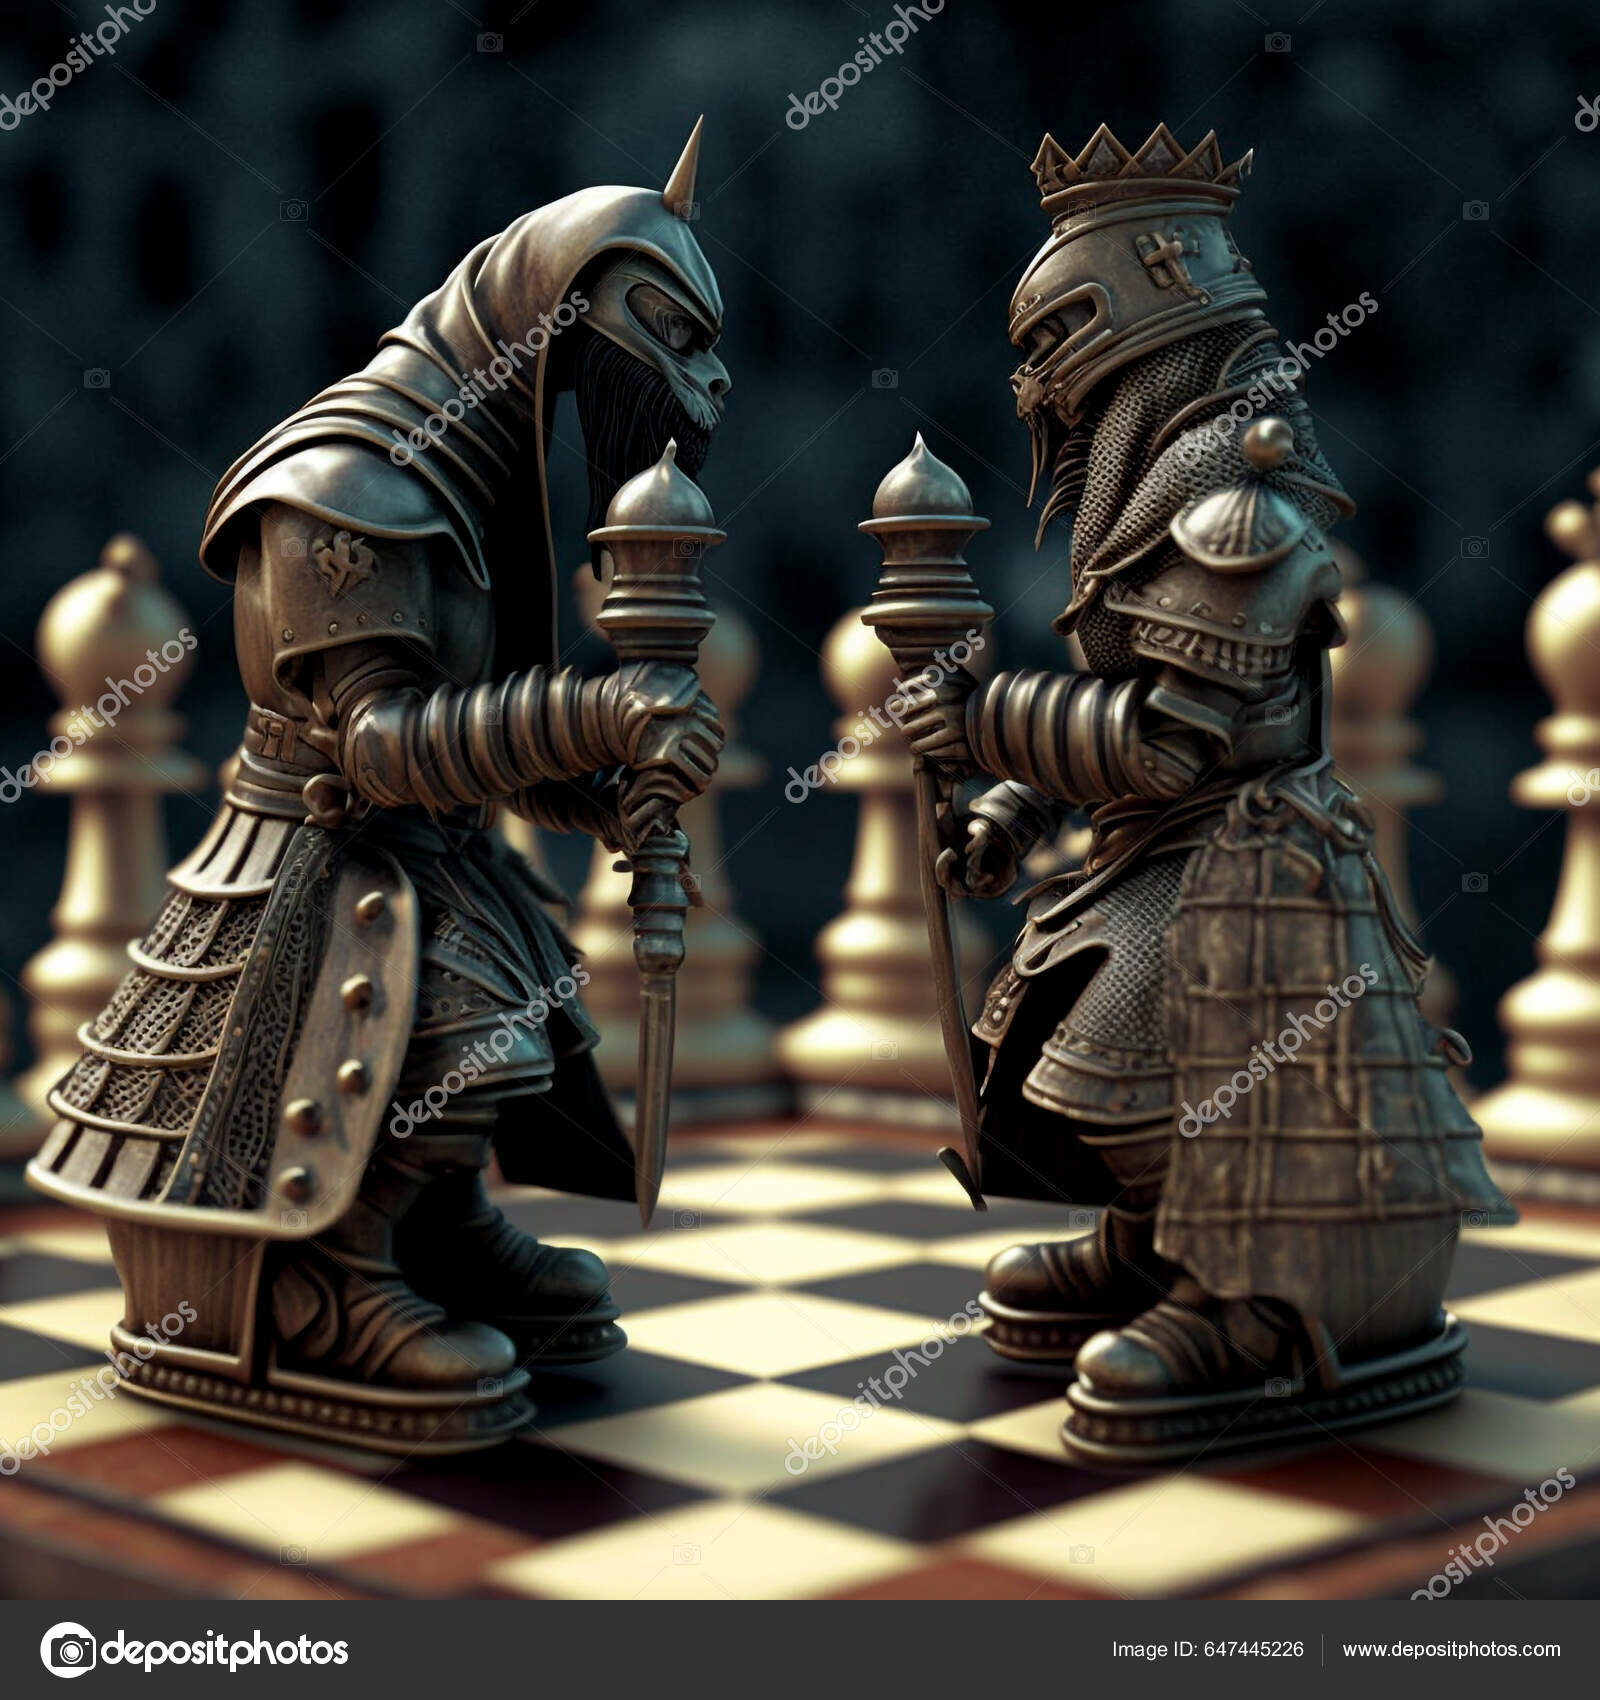 Conjunto de piezas de ajedrez línea arte logo vector ilustración plantilla  icono diseño gráfico. colección de paquetes de varias piezas de ajedrez  para torneo o web